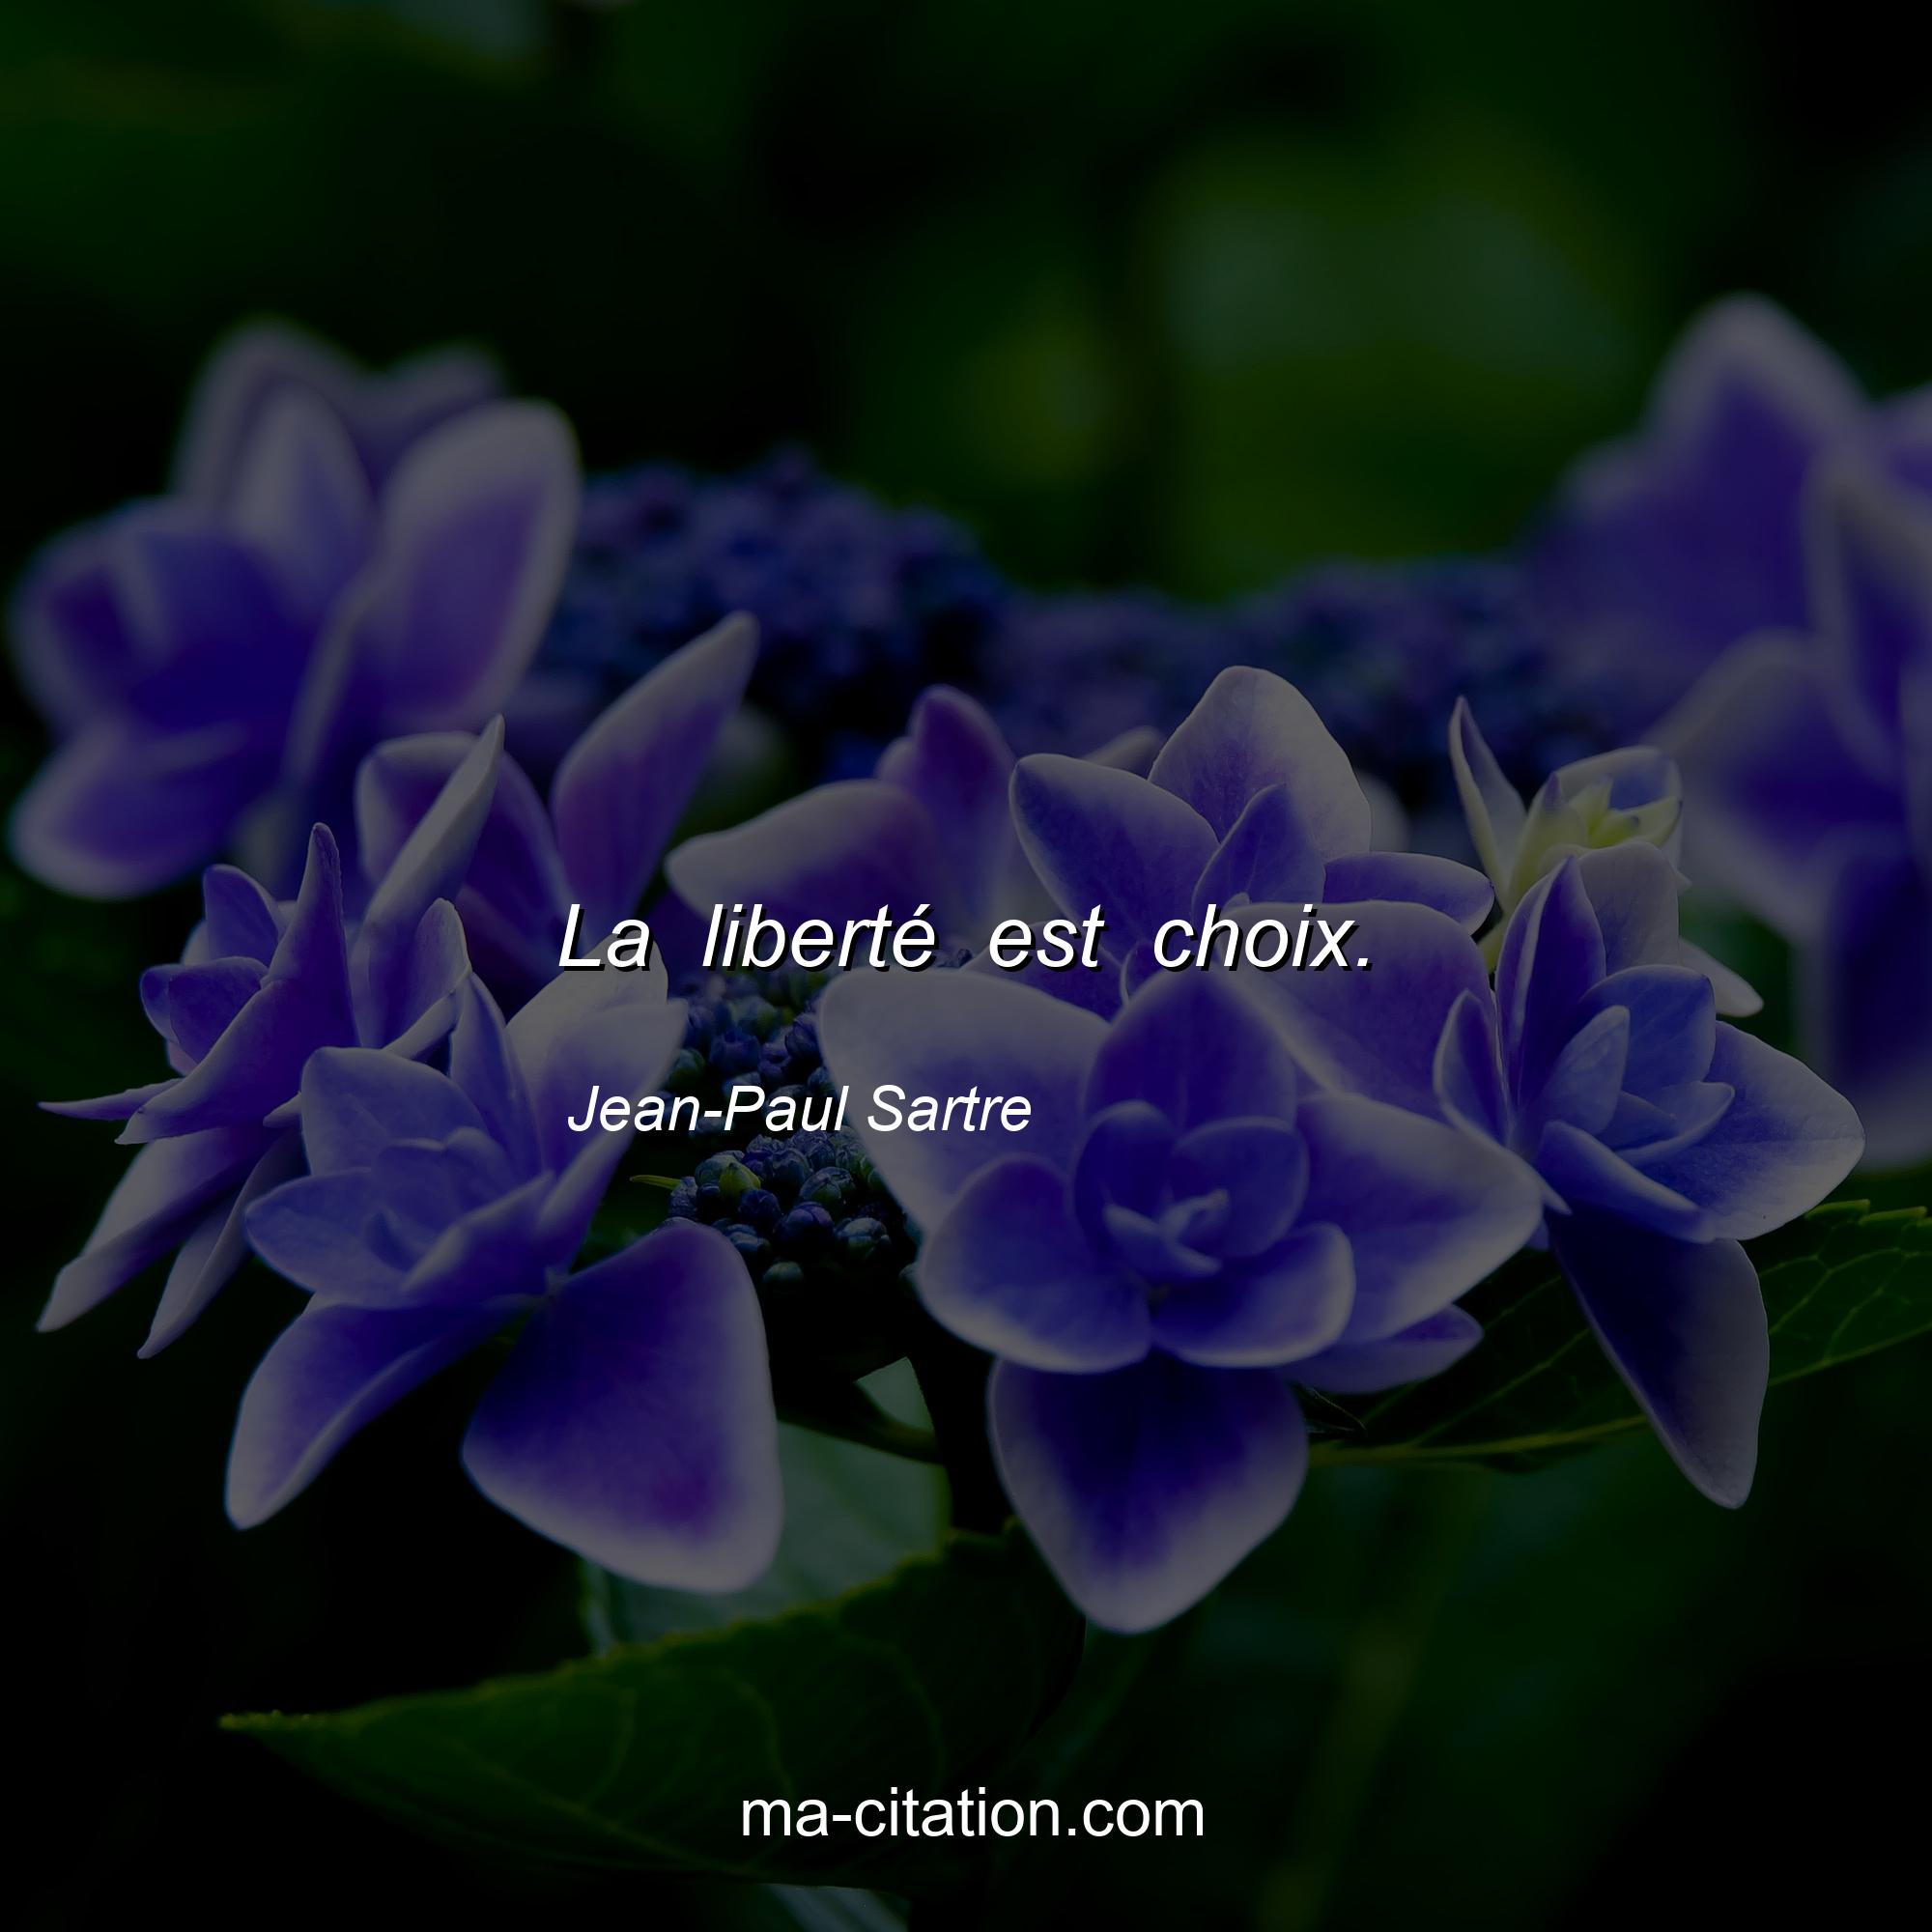 Jean-Paul Sartre : La liberté est choix.